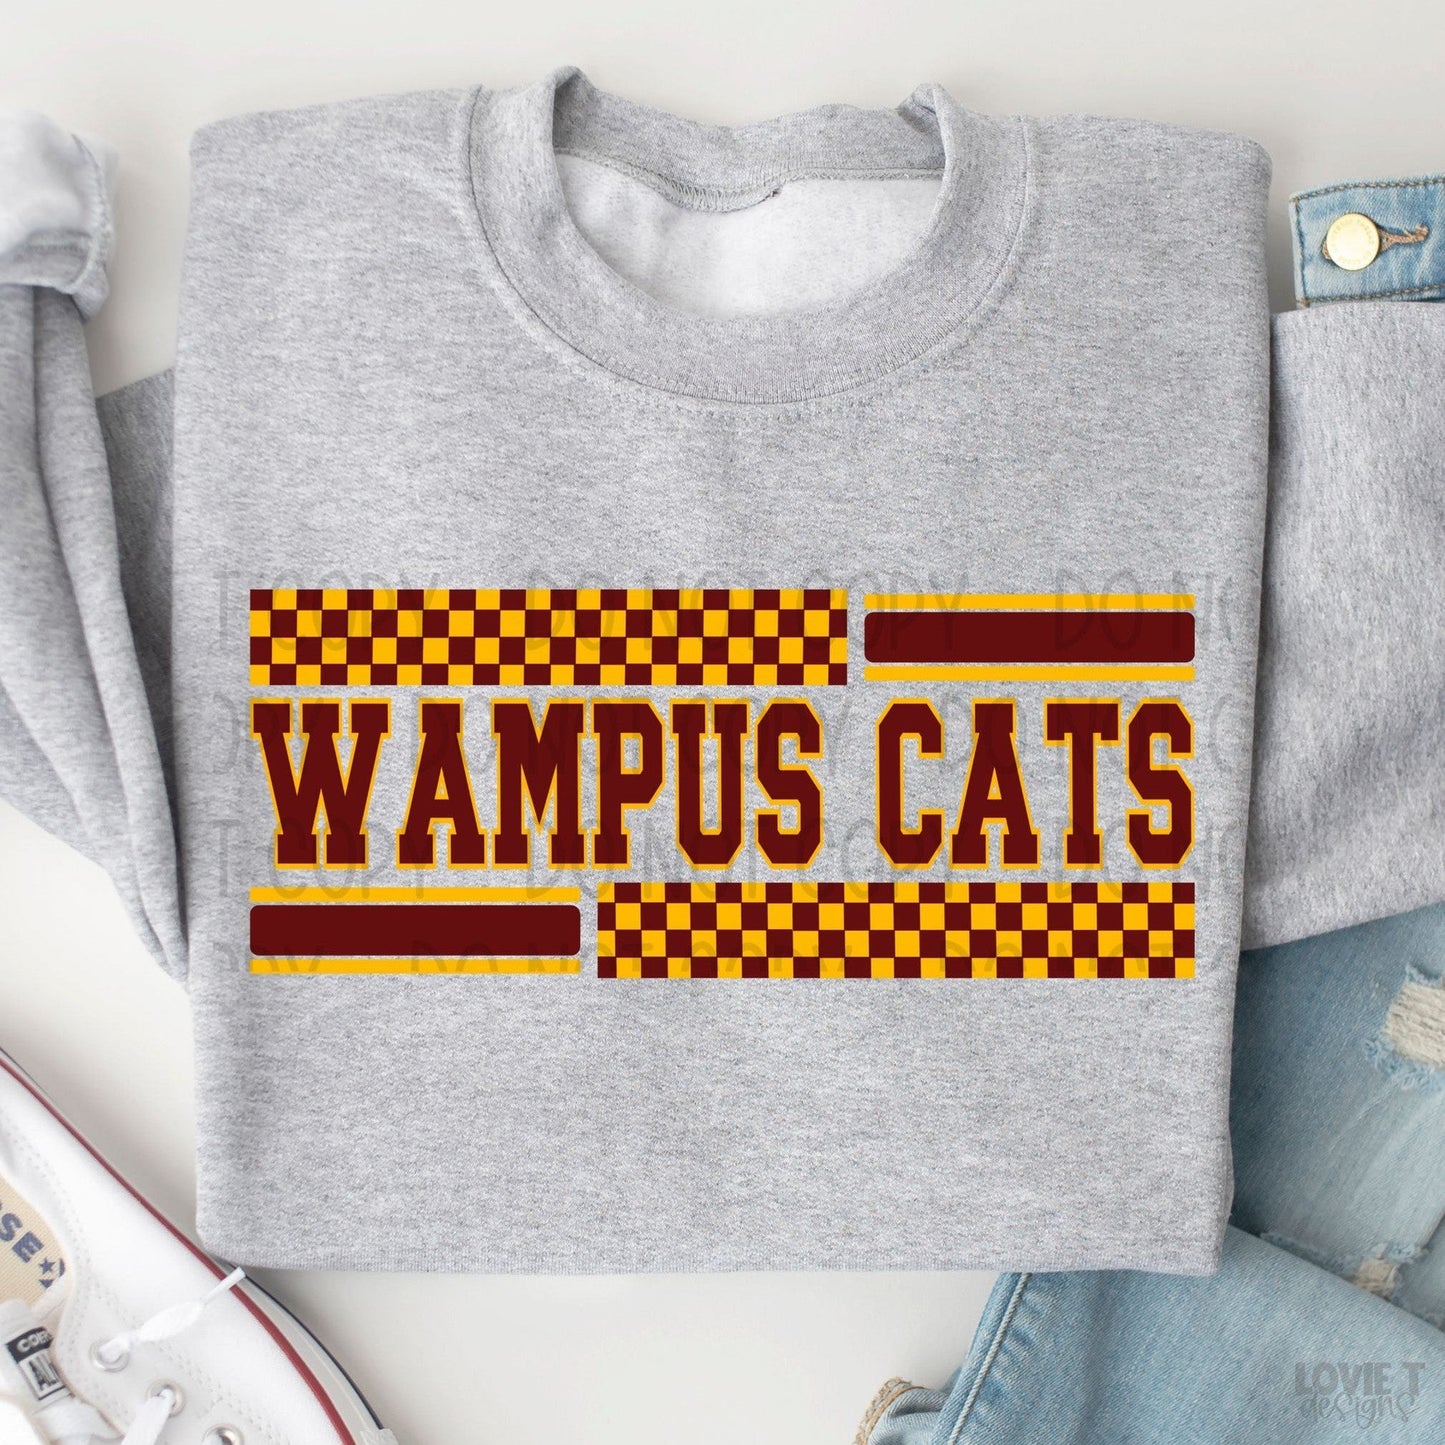 Wampus Cats